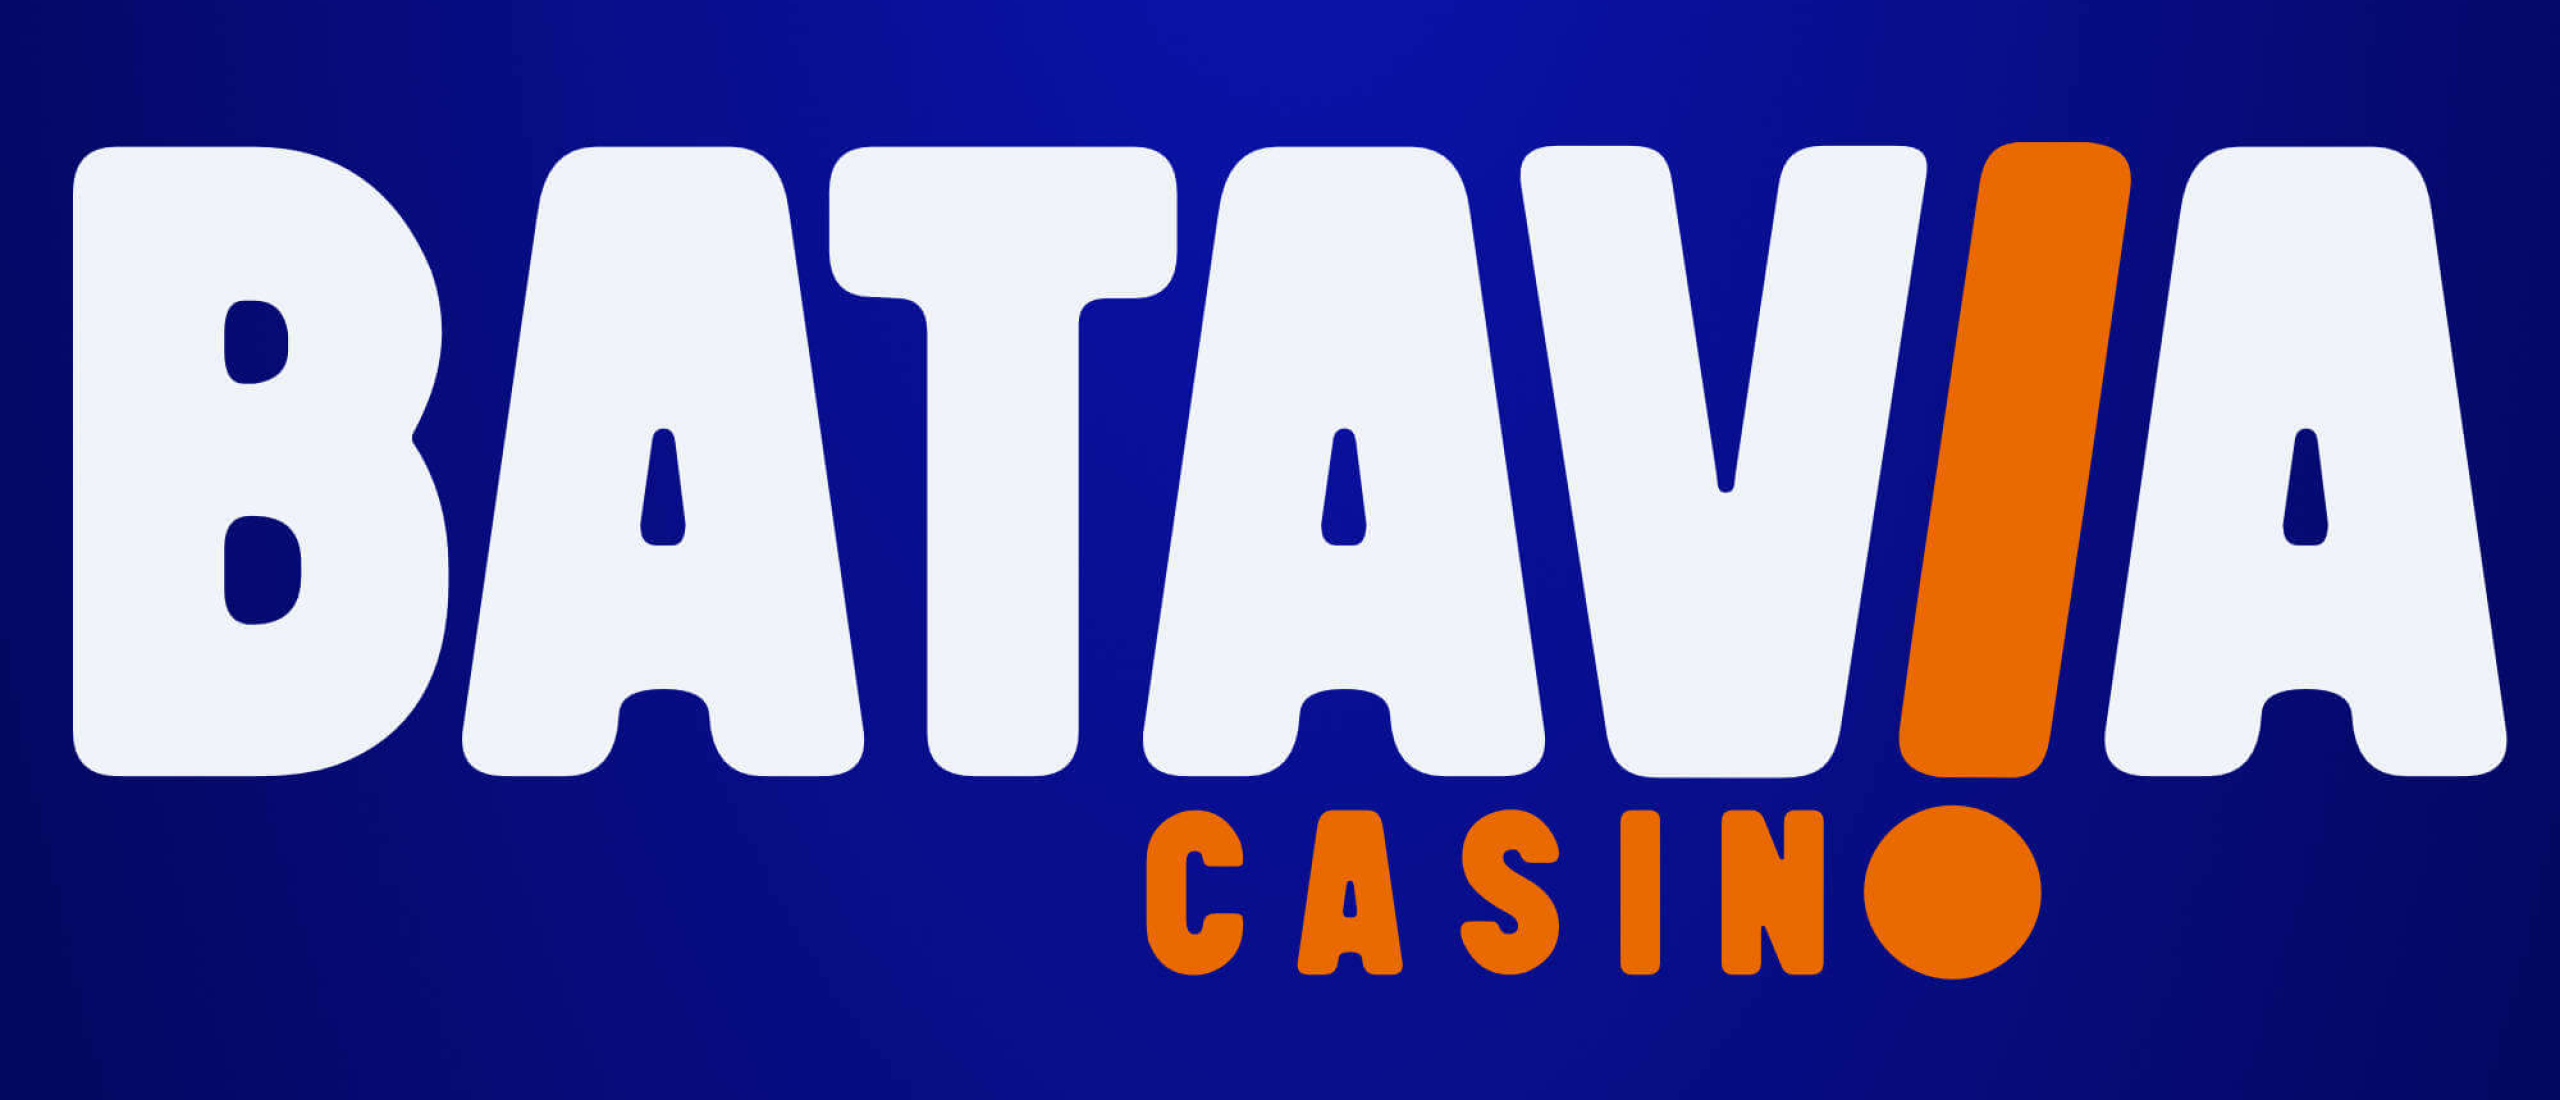 Batavia Casino geen bonusvoorwaarden: waarom hebben ze die niet nodig?